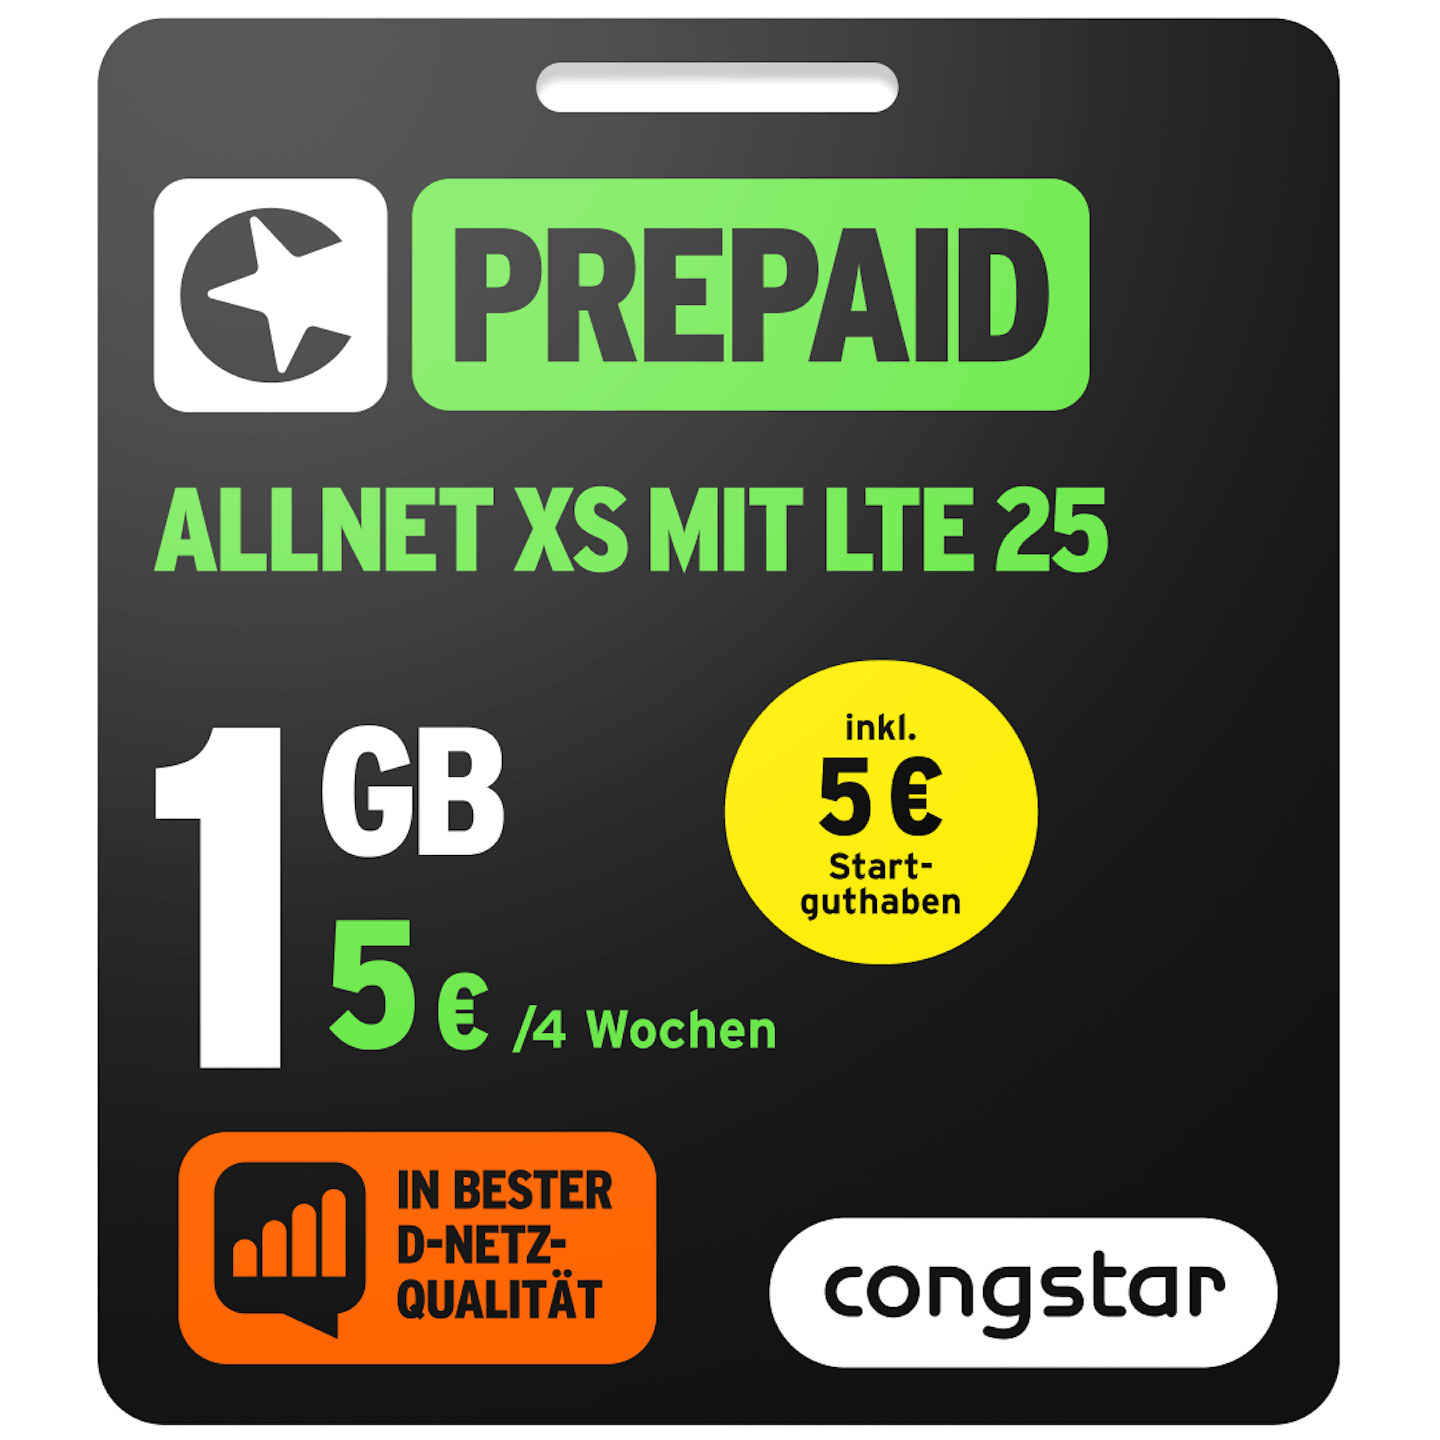 Bild der Verpackung des Prepaid Allnet XS mit LTE 25